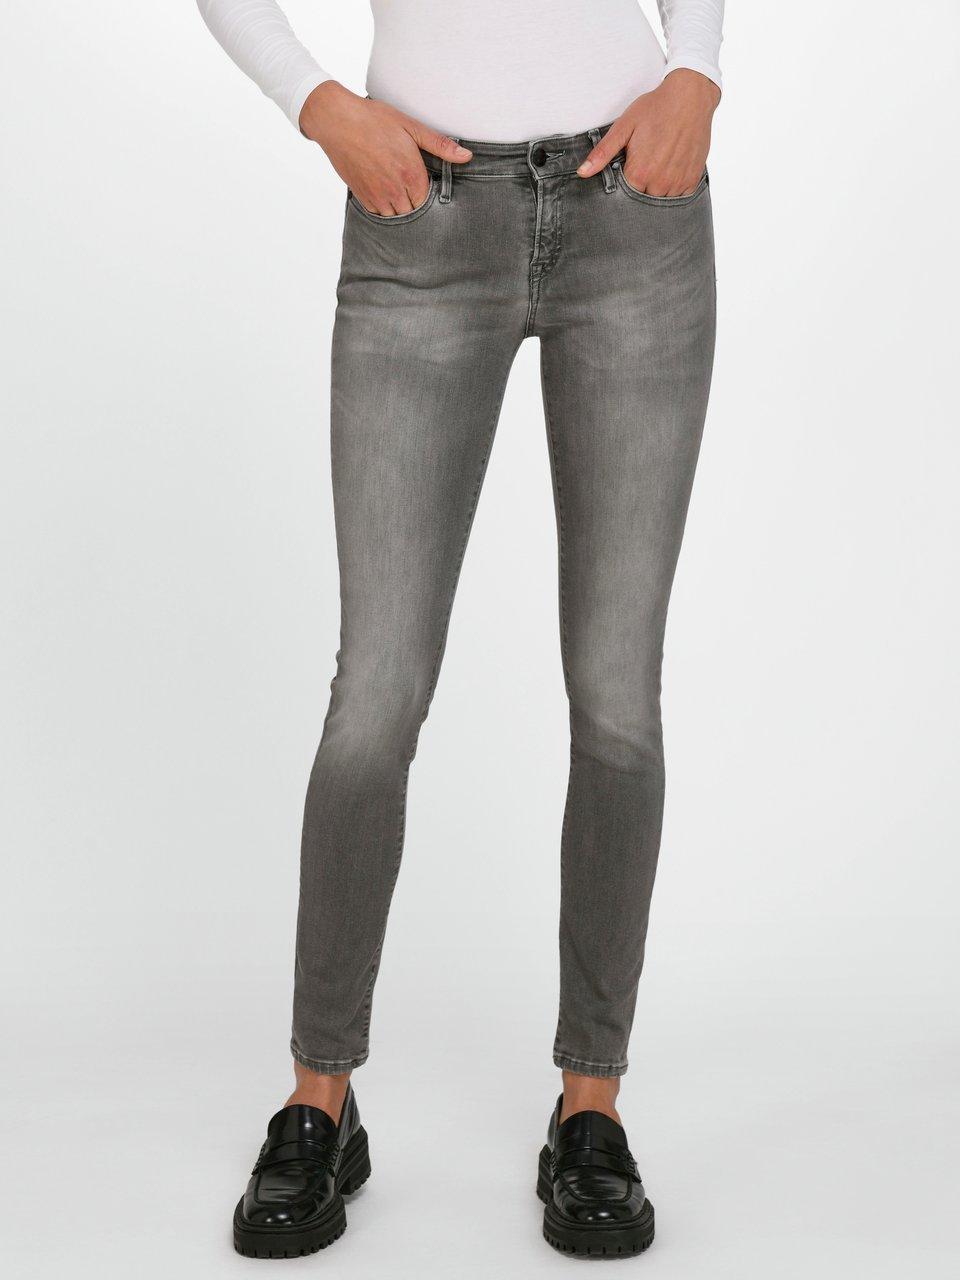 uitvinding Roei uit verschijnen Denham - Jeans in inch-lengte 28 - grijs